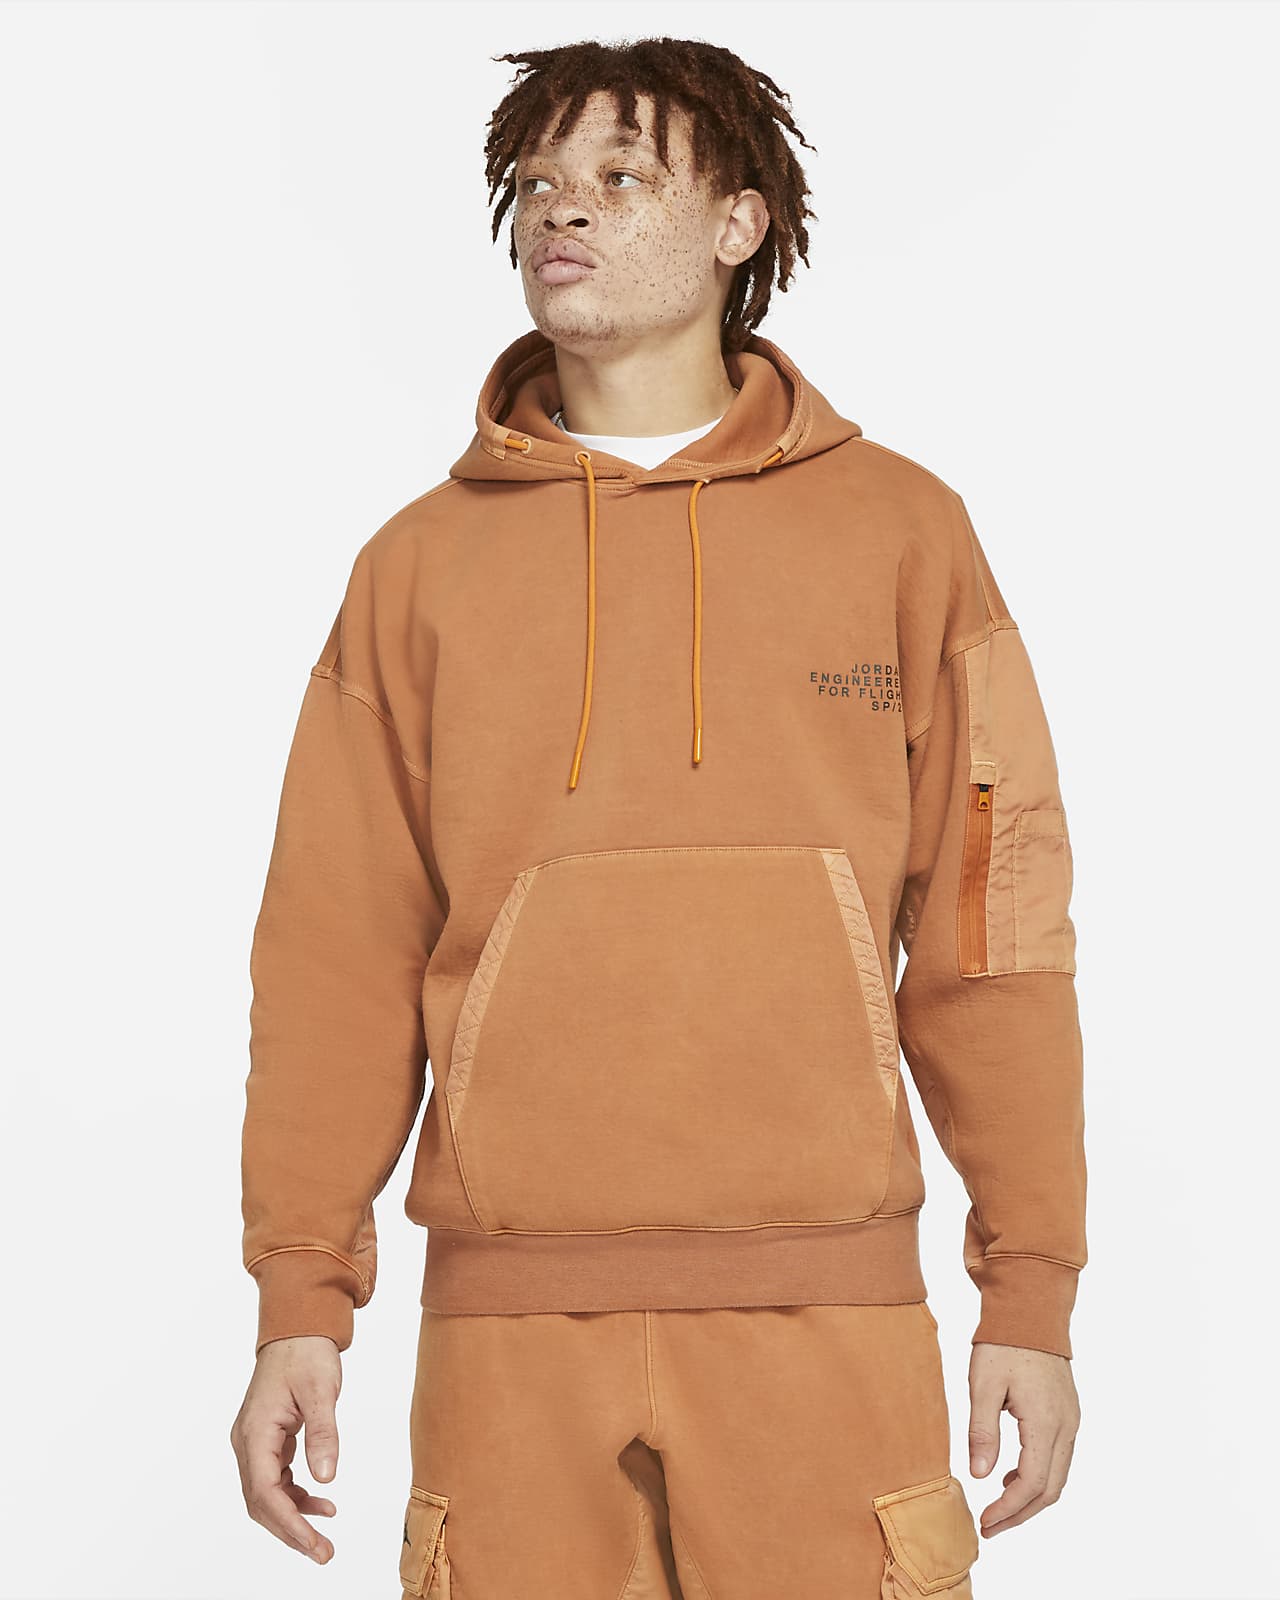 orange jordan hoodie